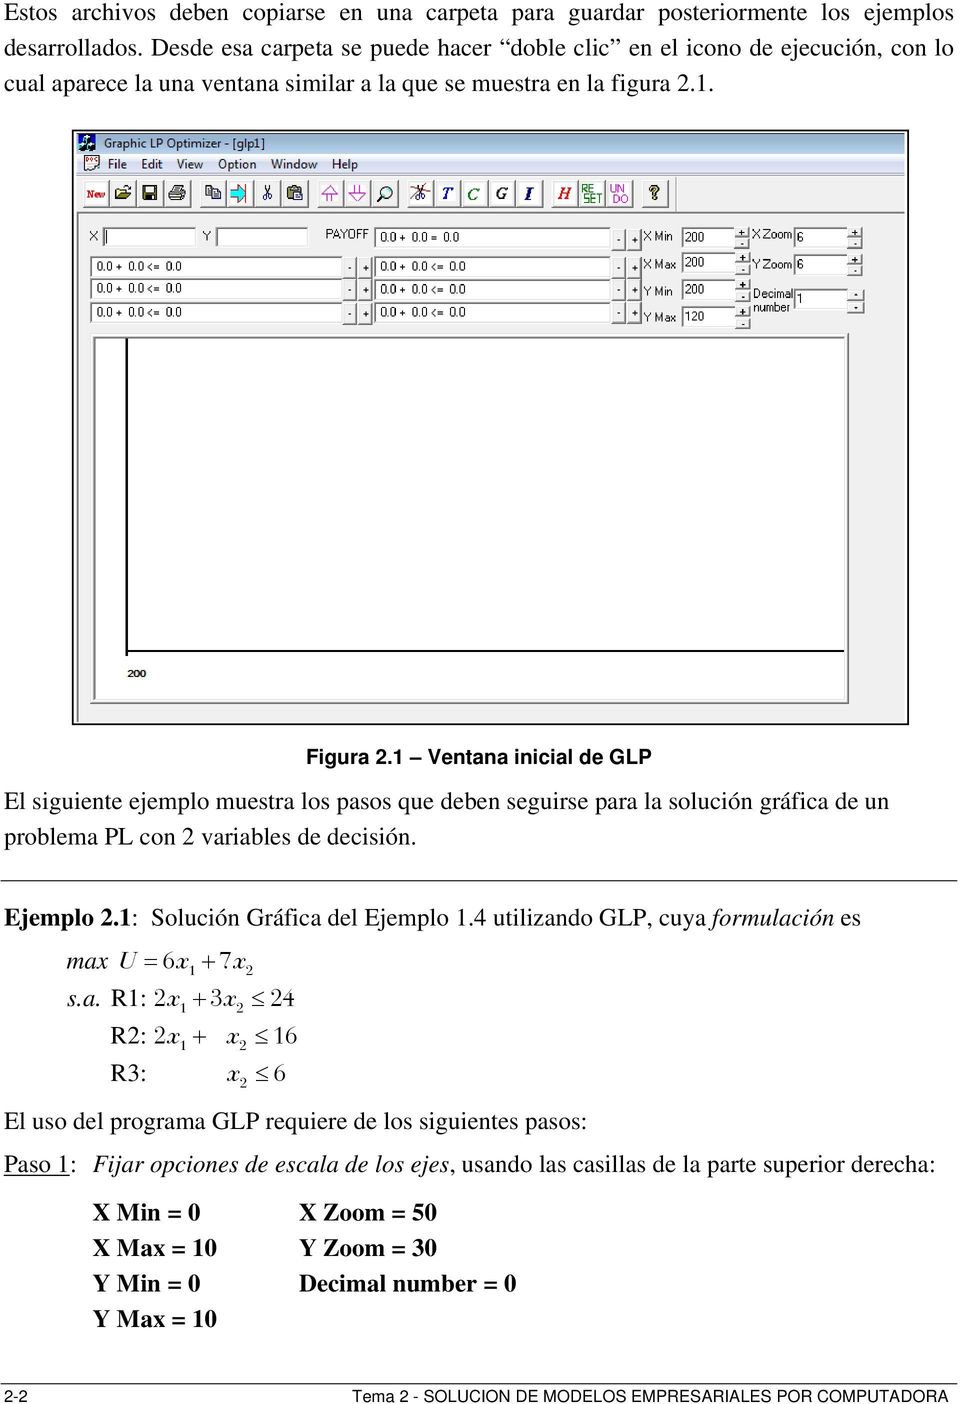 1 Ventana inicial de GLP El siguiente ejemplo muestra los pasos que deben seguirse para la solución gráfica de un problema PL con 2 variables de decisión. Ejemplo 2.1: Solución Gráfica del Ejemplo 1.